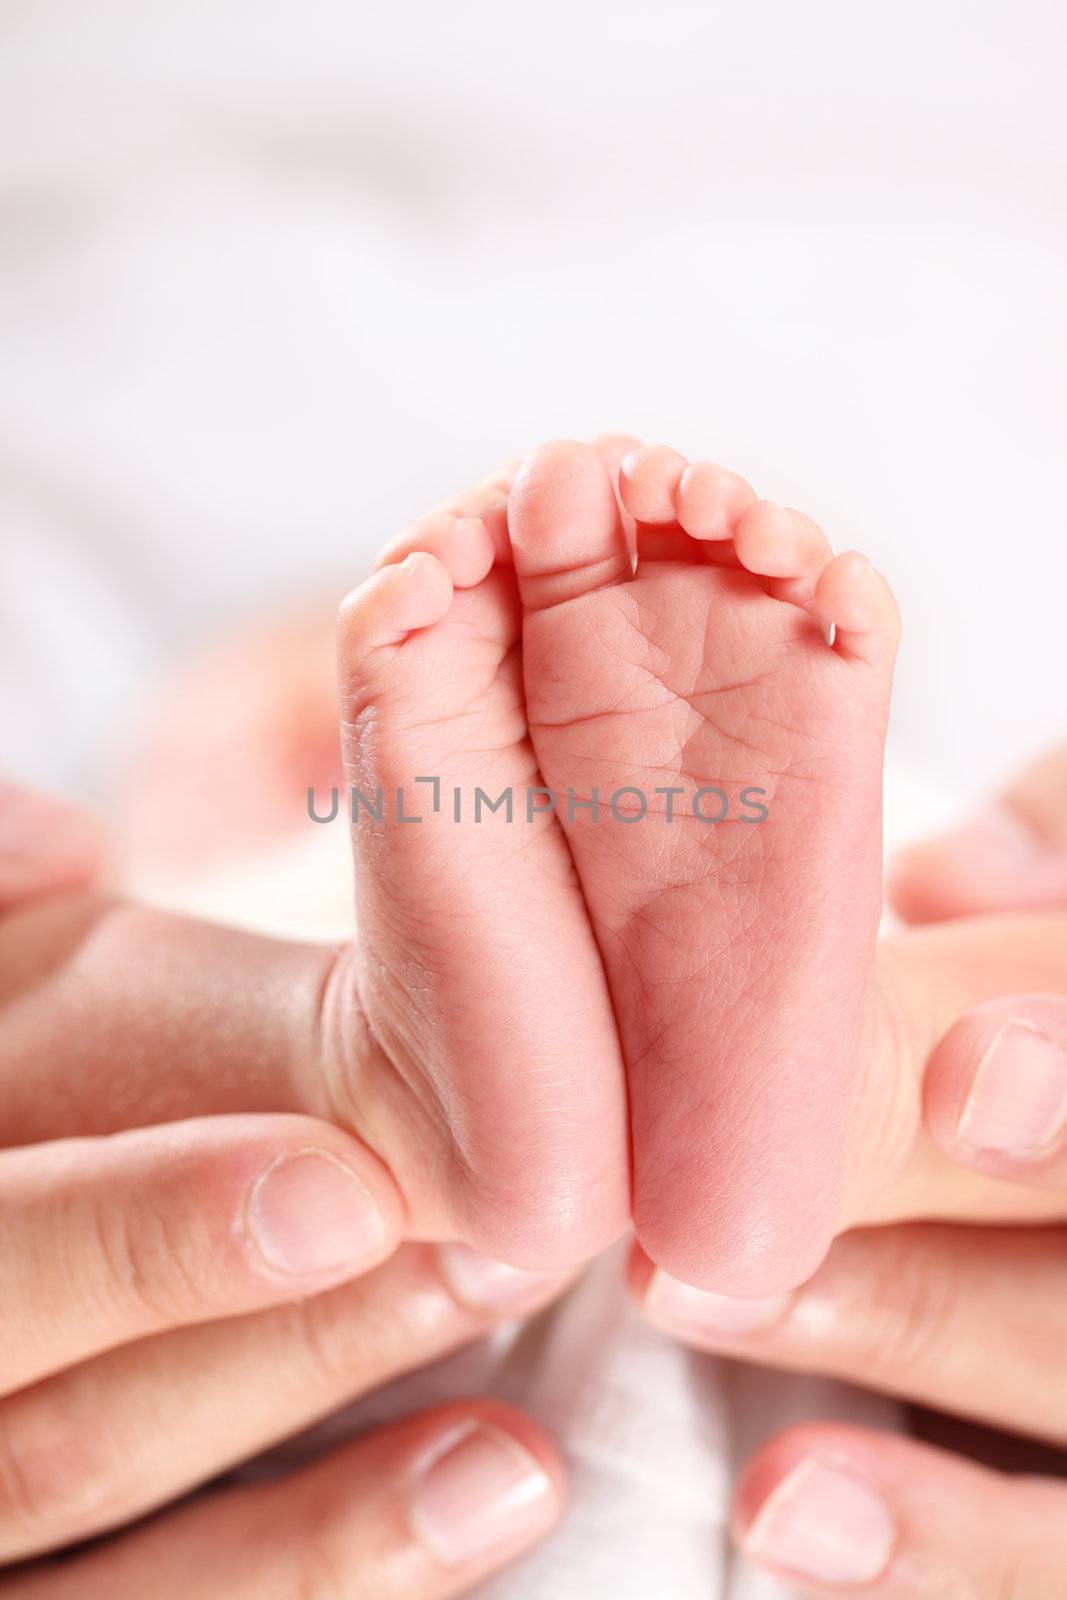 A parent's hands tenderly hold their newborn's feet